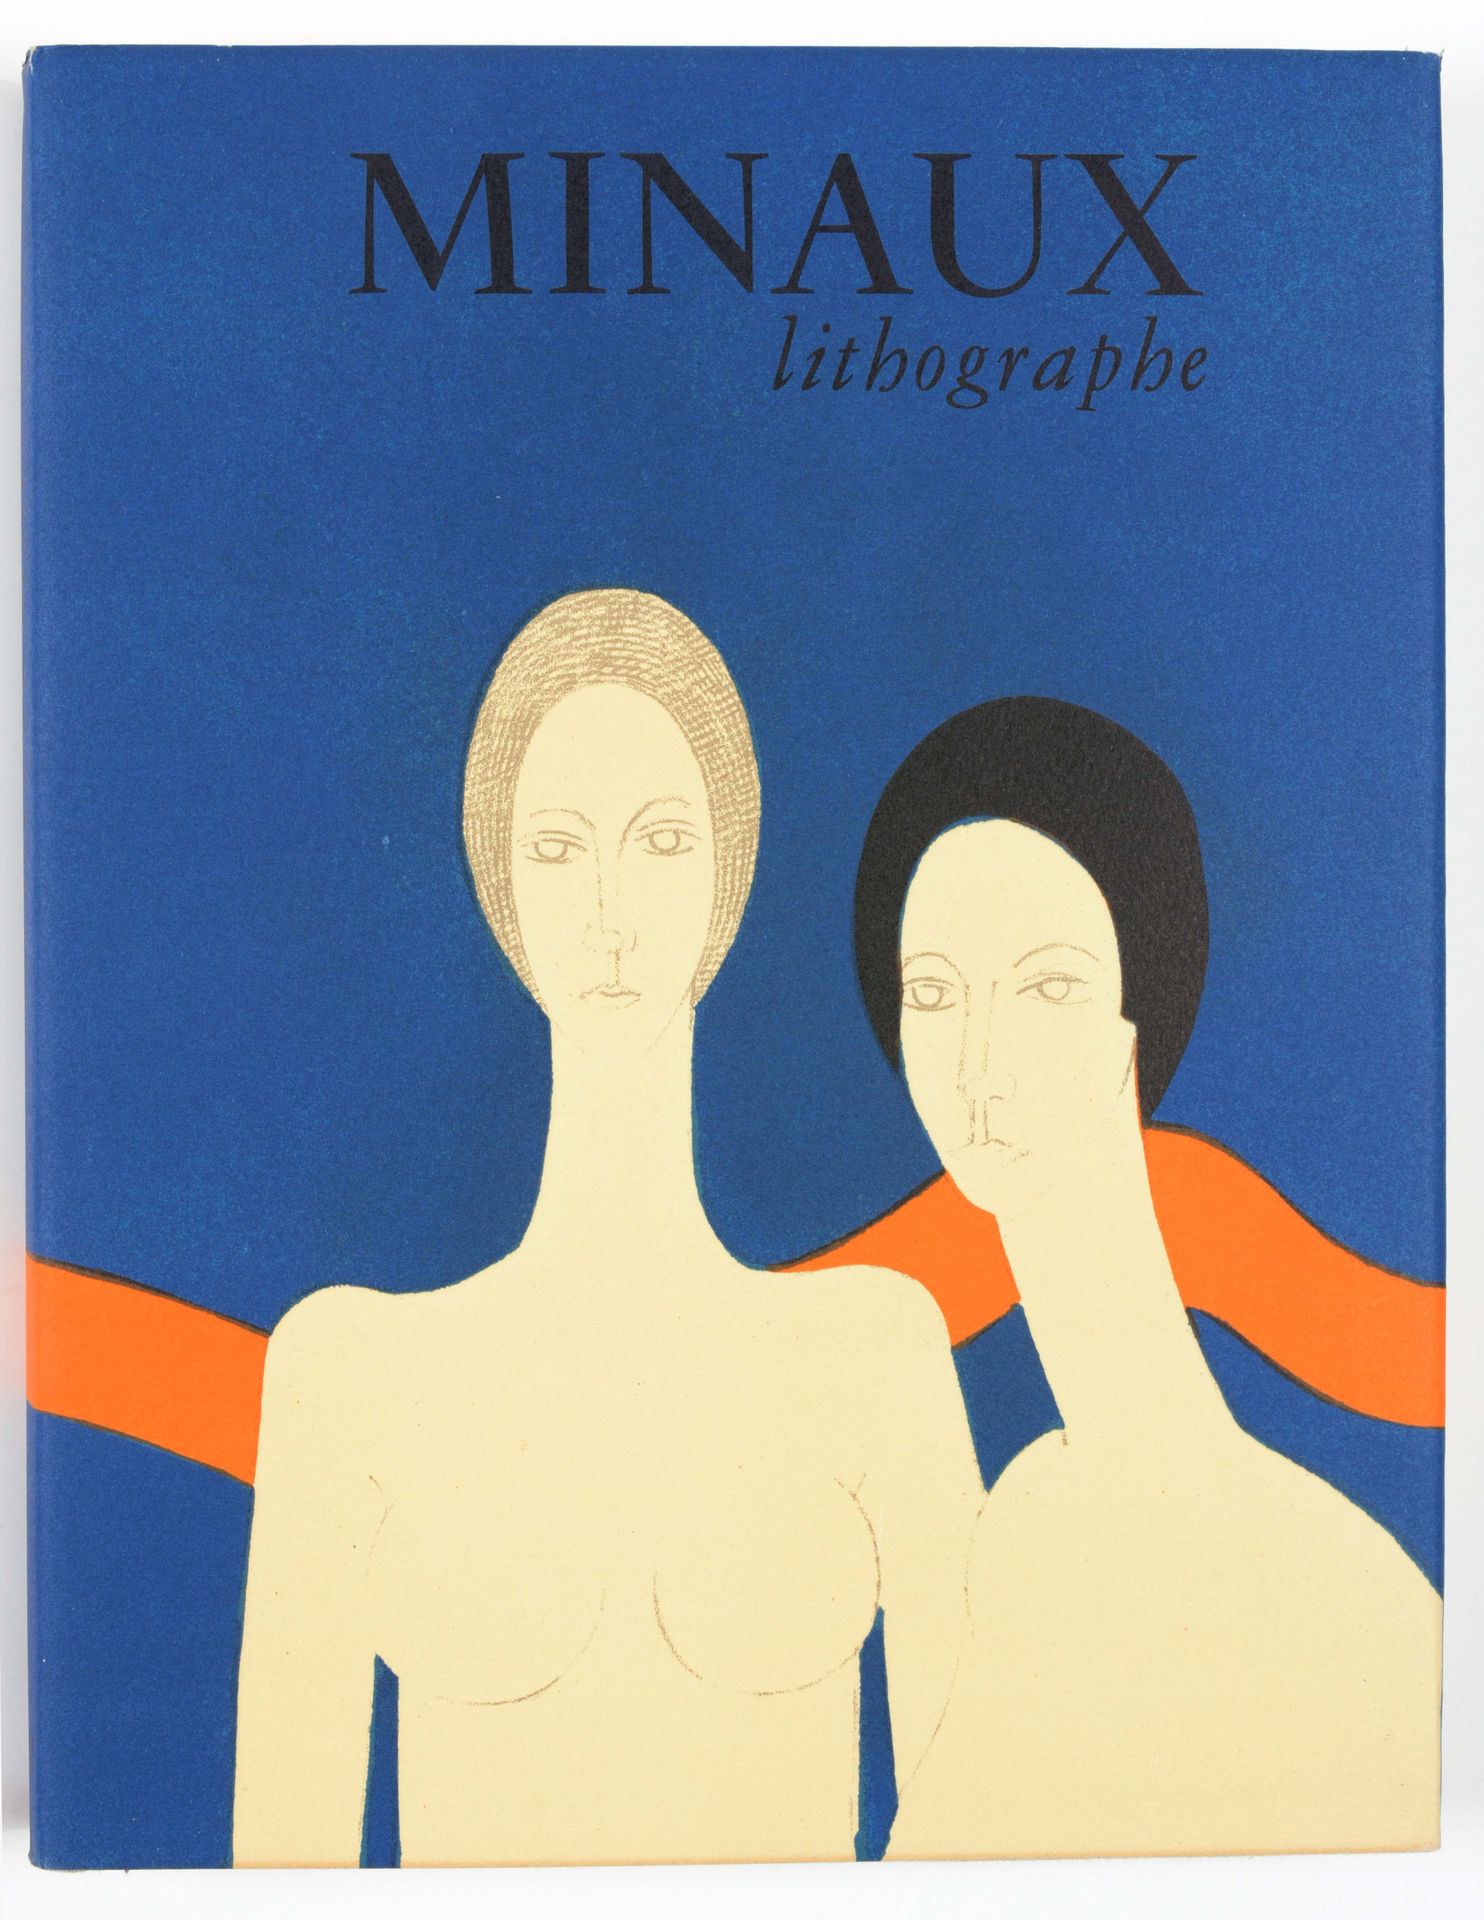 [MINAUX] SORLIER, Charles 米诺石版画家 1948-1973年

4英寸，207页，有6张MINAUX的彩色原版石版画和大量复制品。布面&hellip;